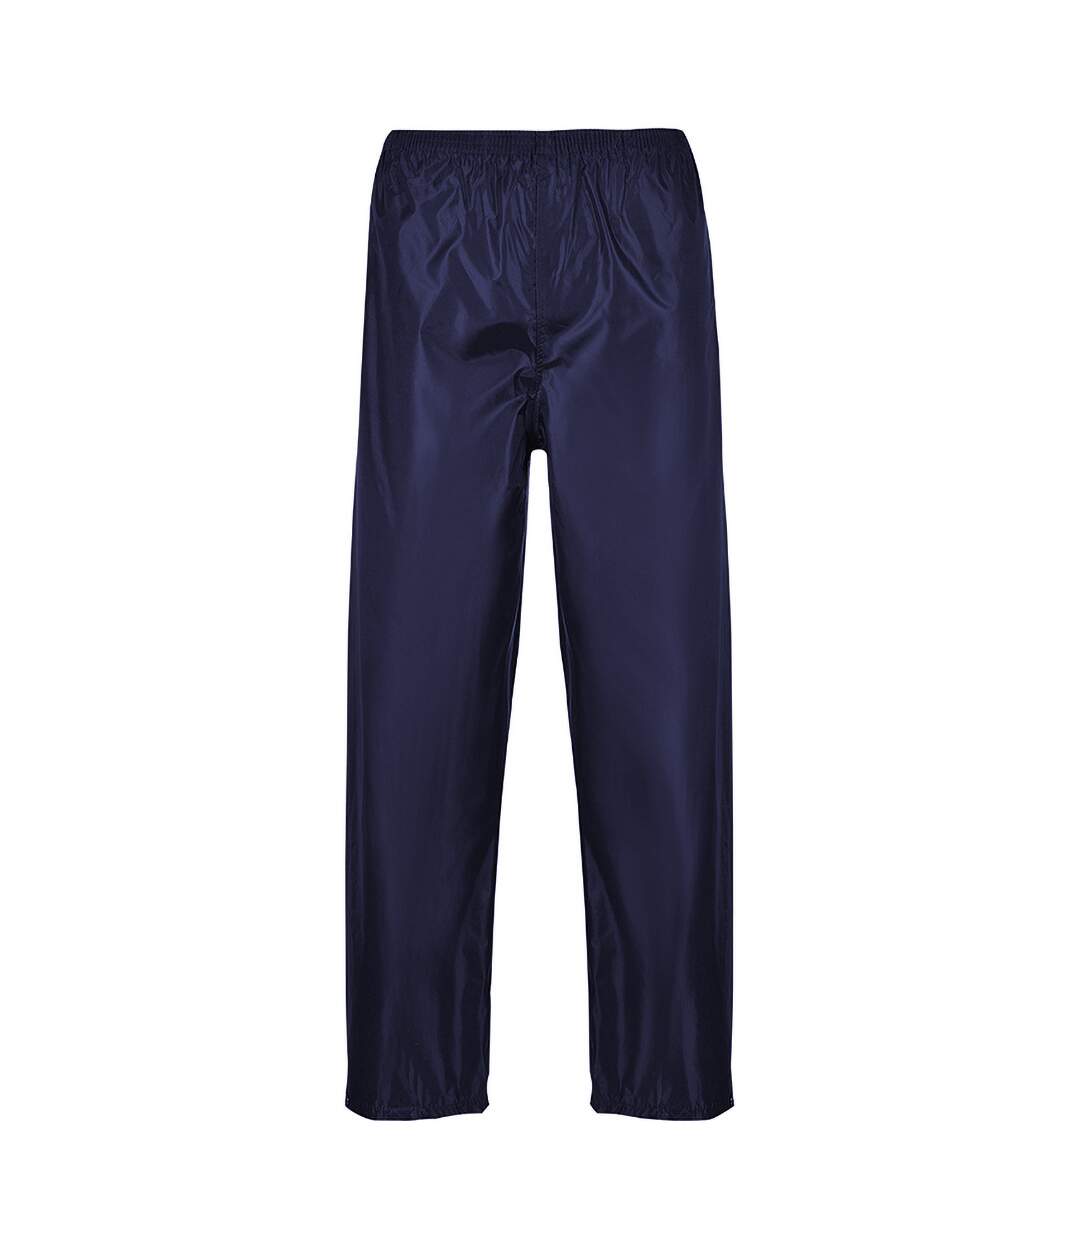 Portwest - Pantalon de pluie classique - Homme (Bleu marine) - UTRW1023